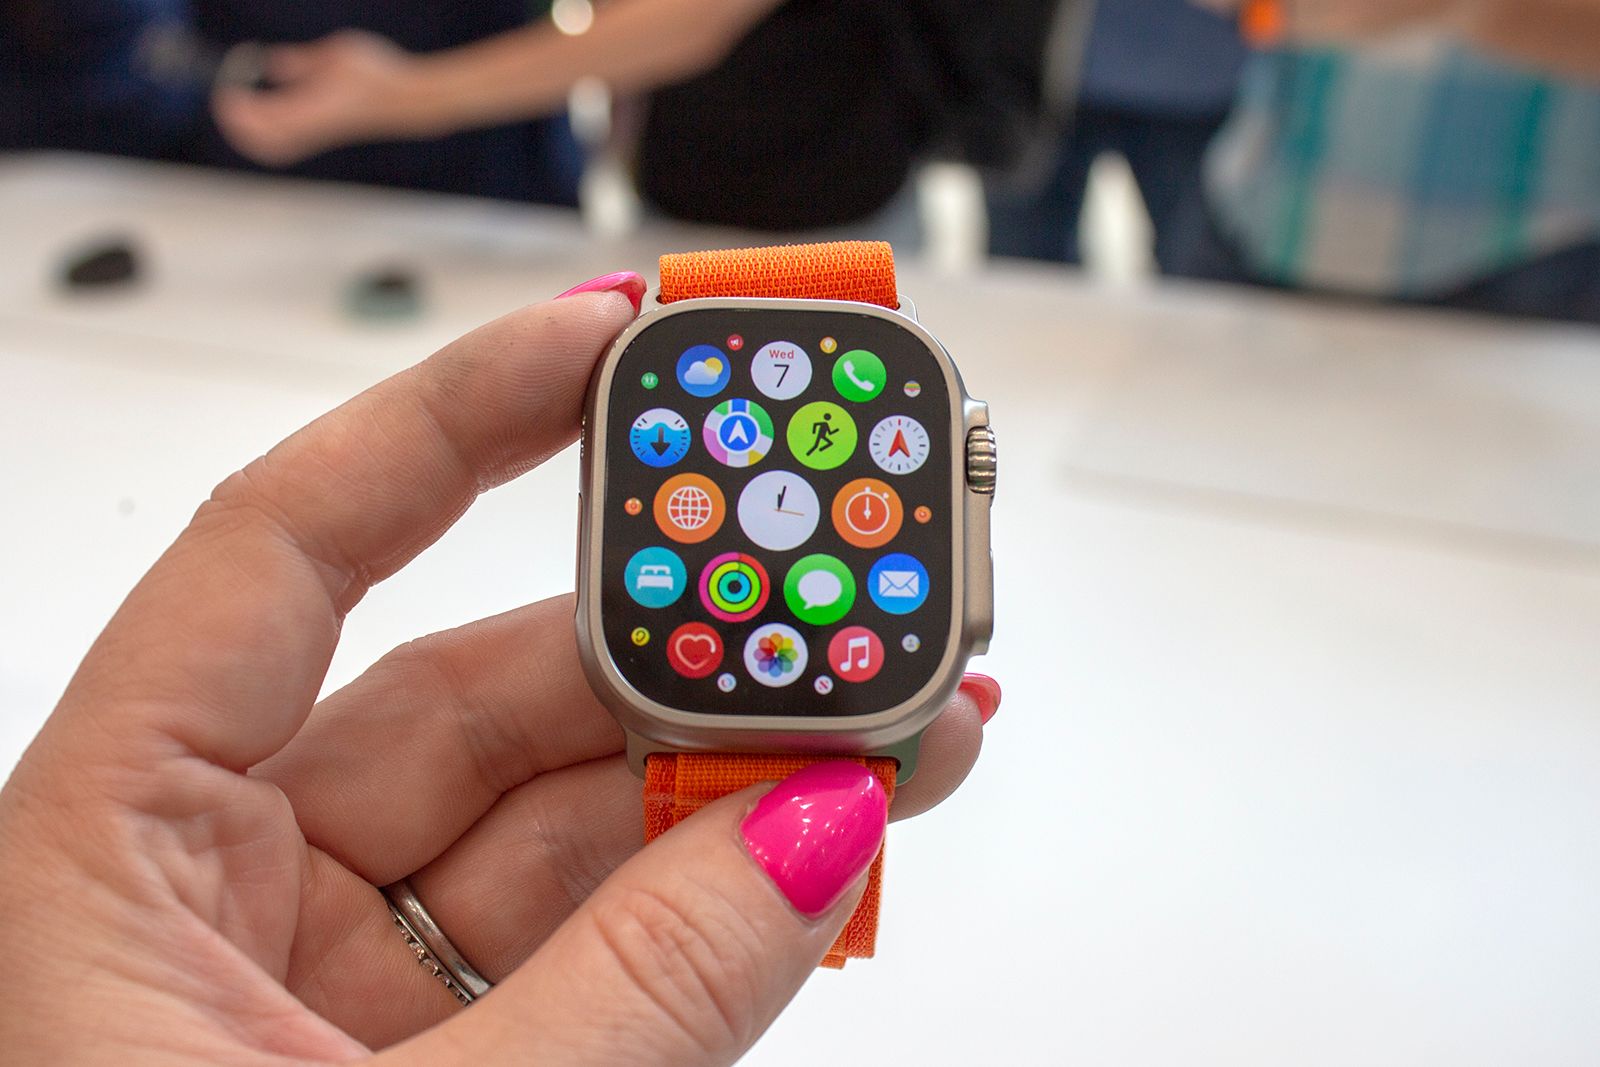 Apple Watch Ultra on the app screen